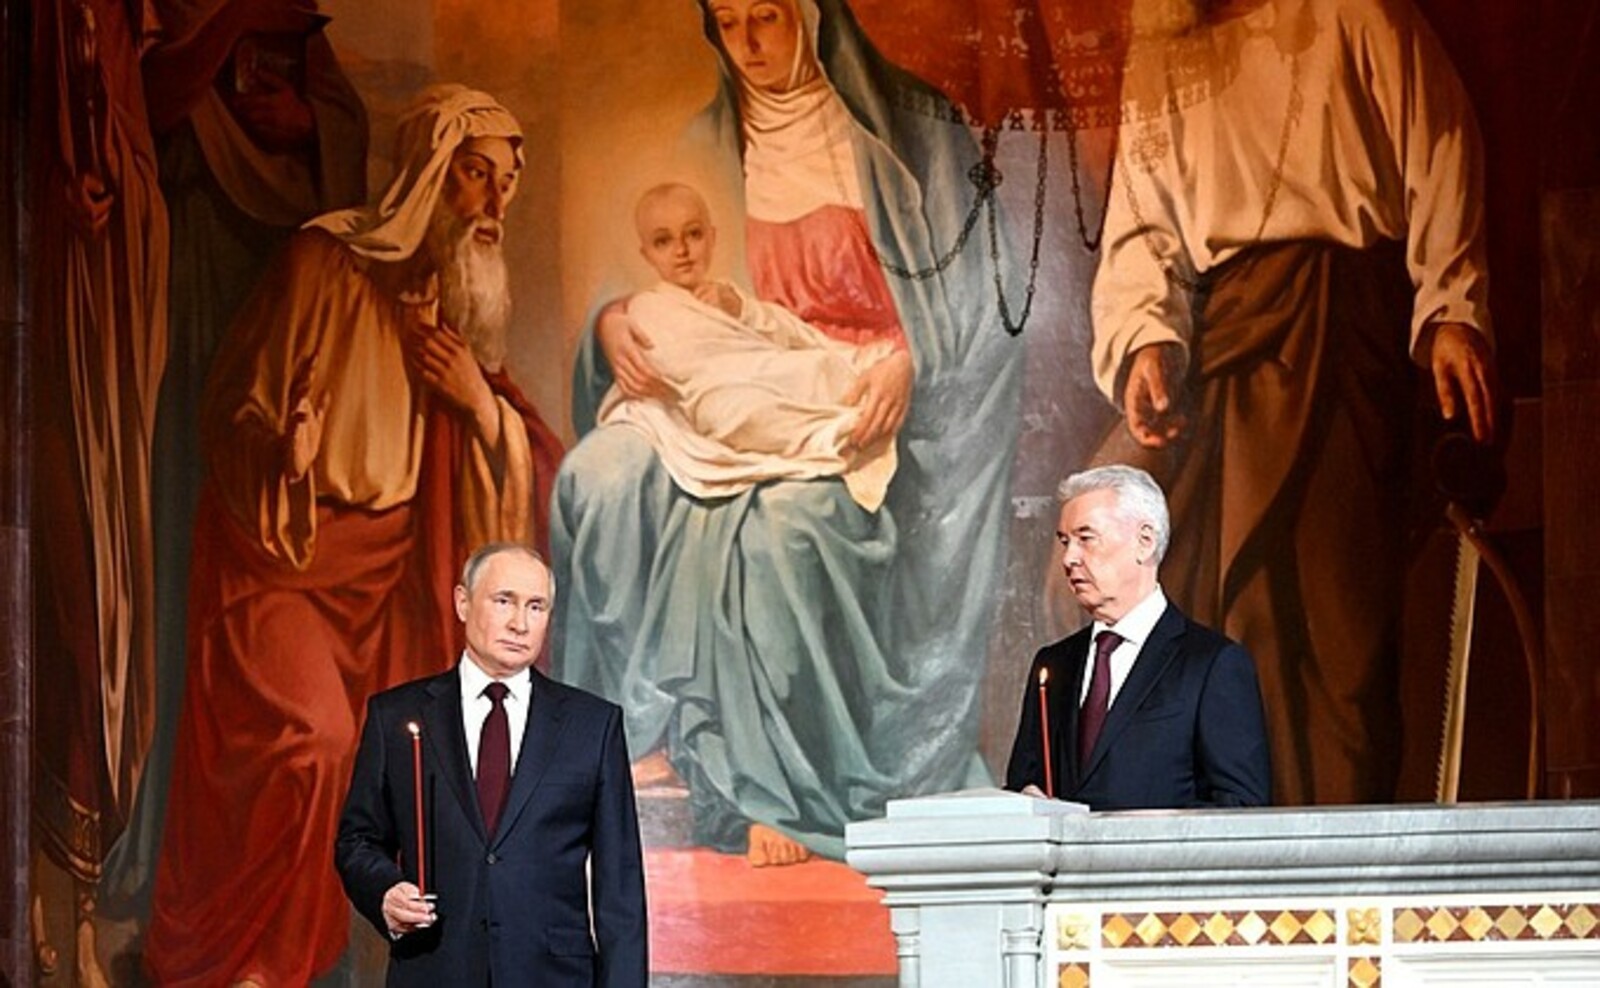 В. Путин поздравил Патриарха Московского и всея Руси Кирилла с праздником Пасхи – Светлым Христовым Воскресением.